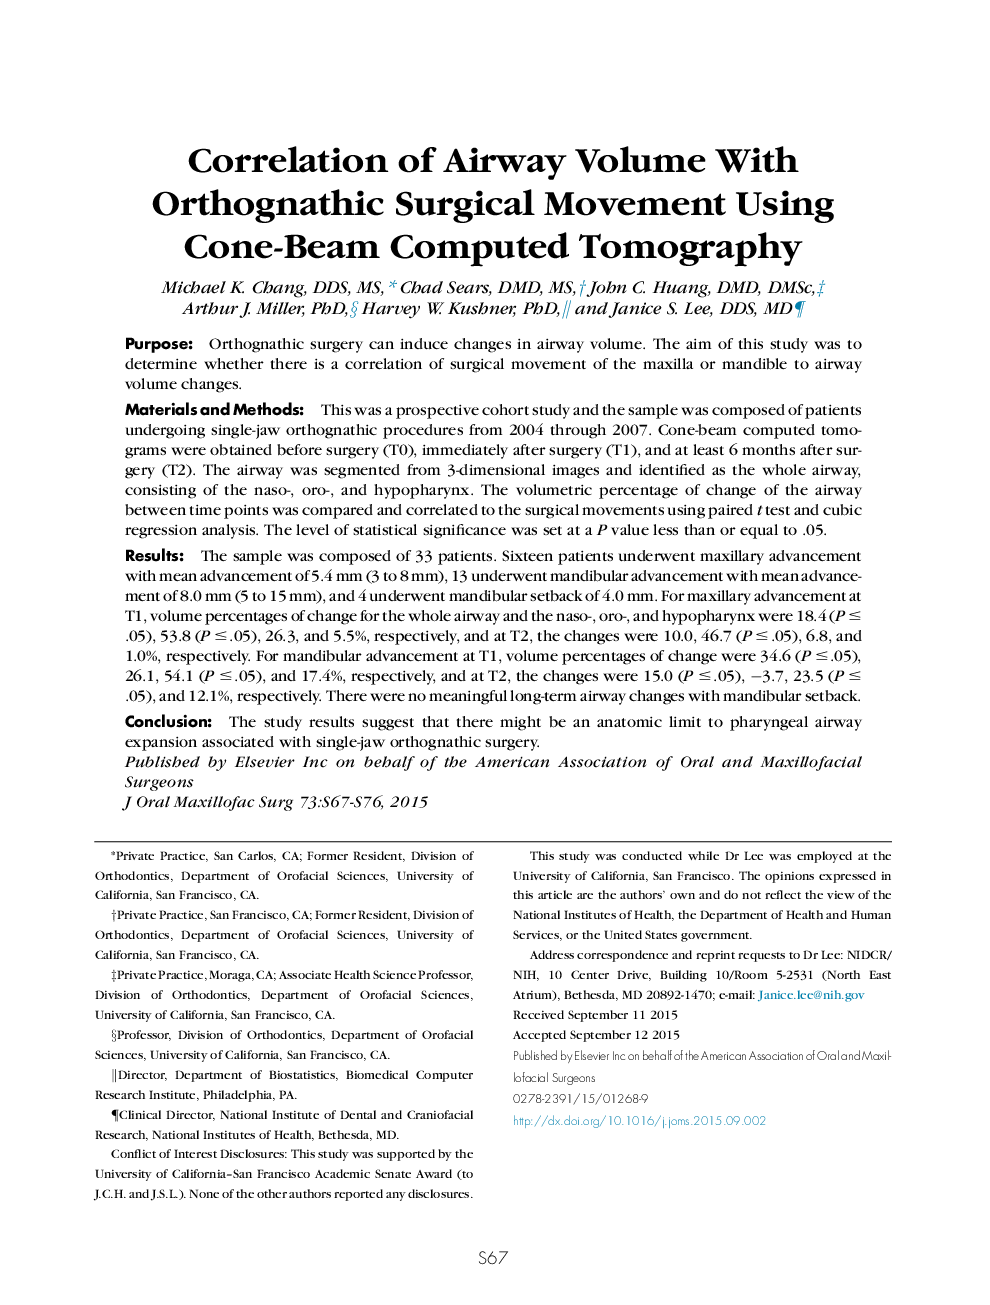 همبستگی حجم جراحی با جراحی ارتوگنات جراحی با استفاده از توموگرافی کامپیوتری کمانه 